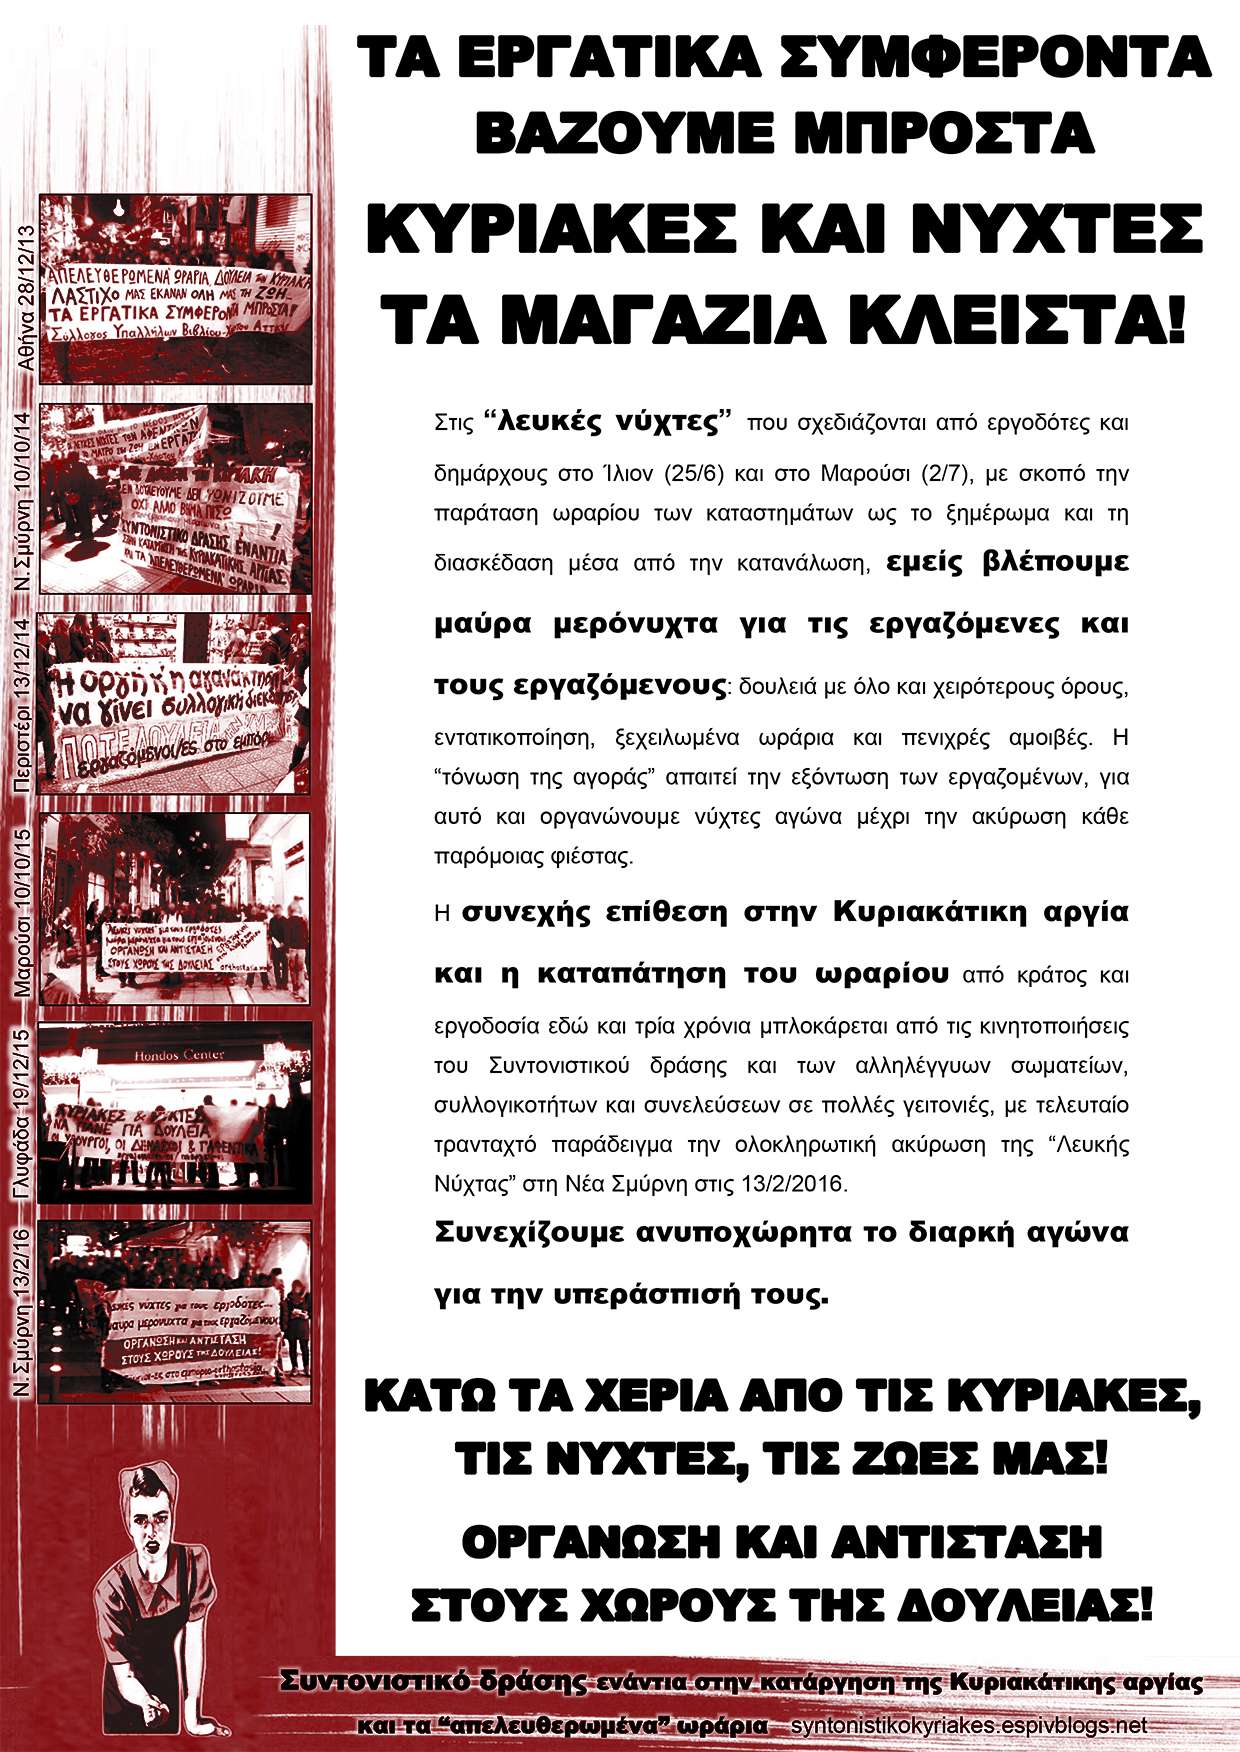 Συντονιστικό δράσης: Κείμενο και αφίσα αντιπληροφόρησης για τη “λευκή” νύχτα στο Ίλιον